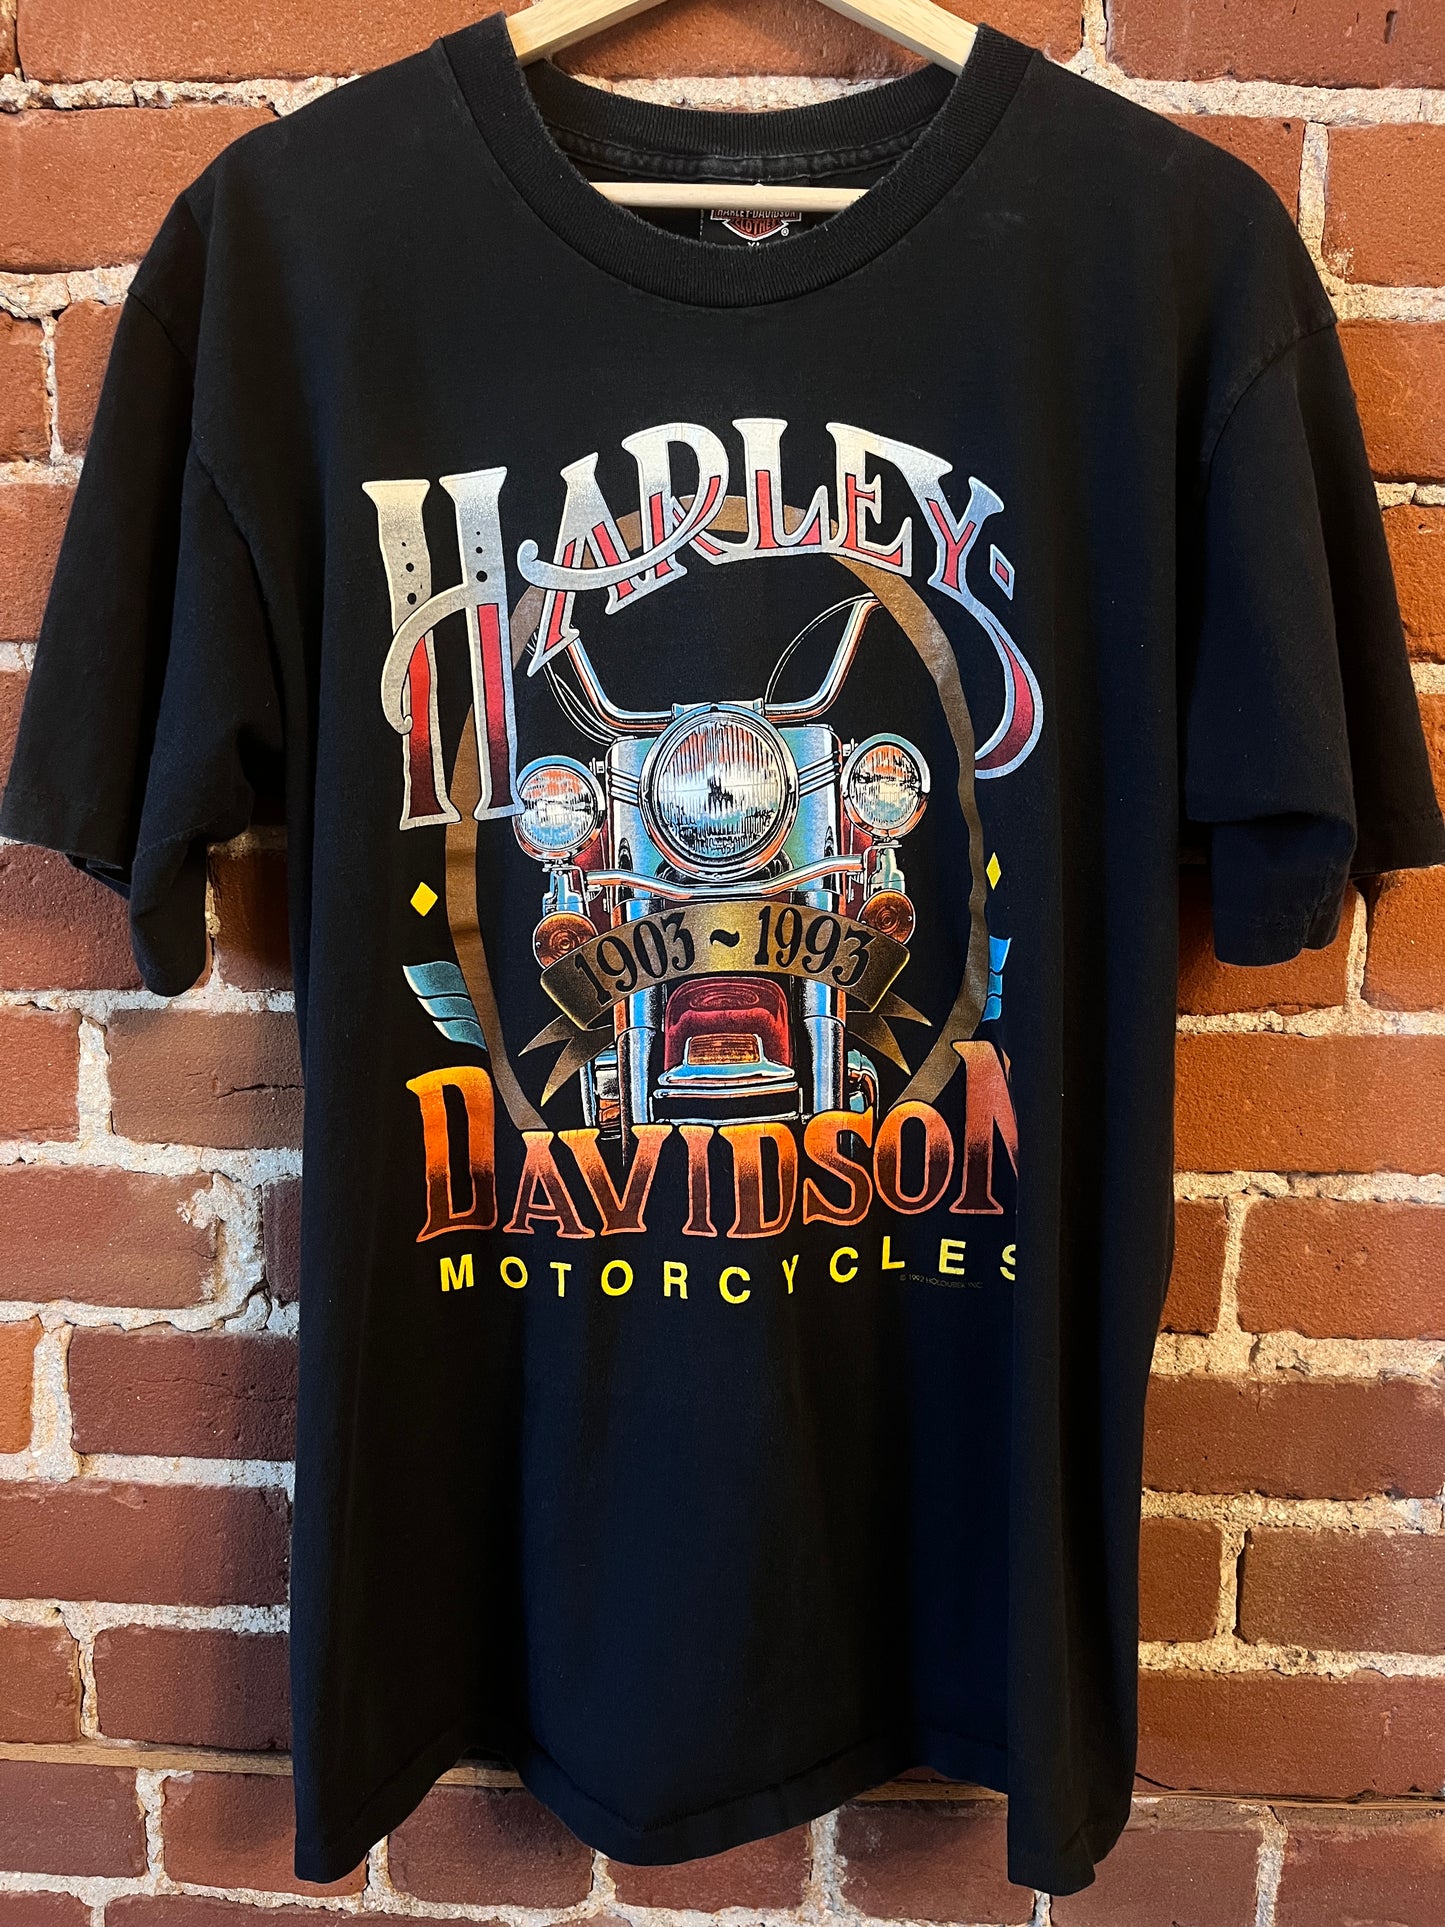 Harley Davidson Motorcylces graphic of Tacoma, Washington '92